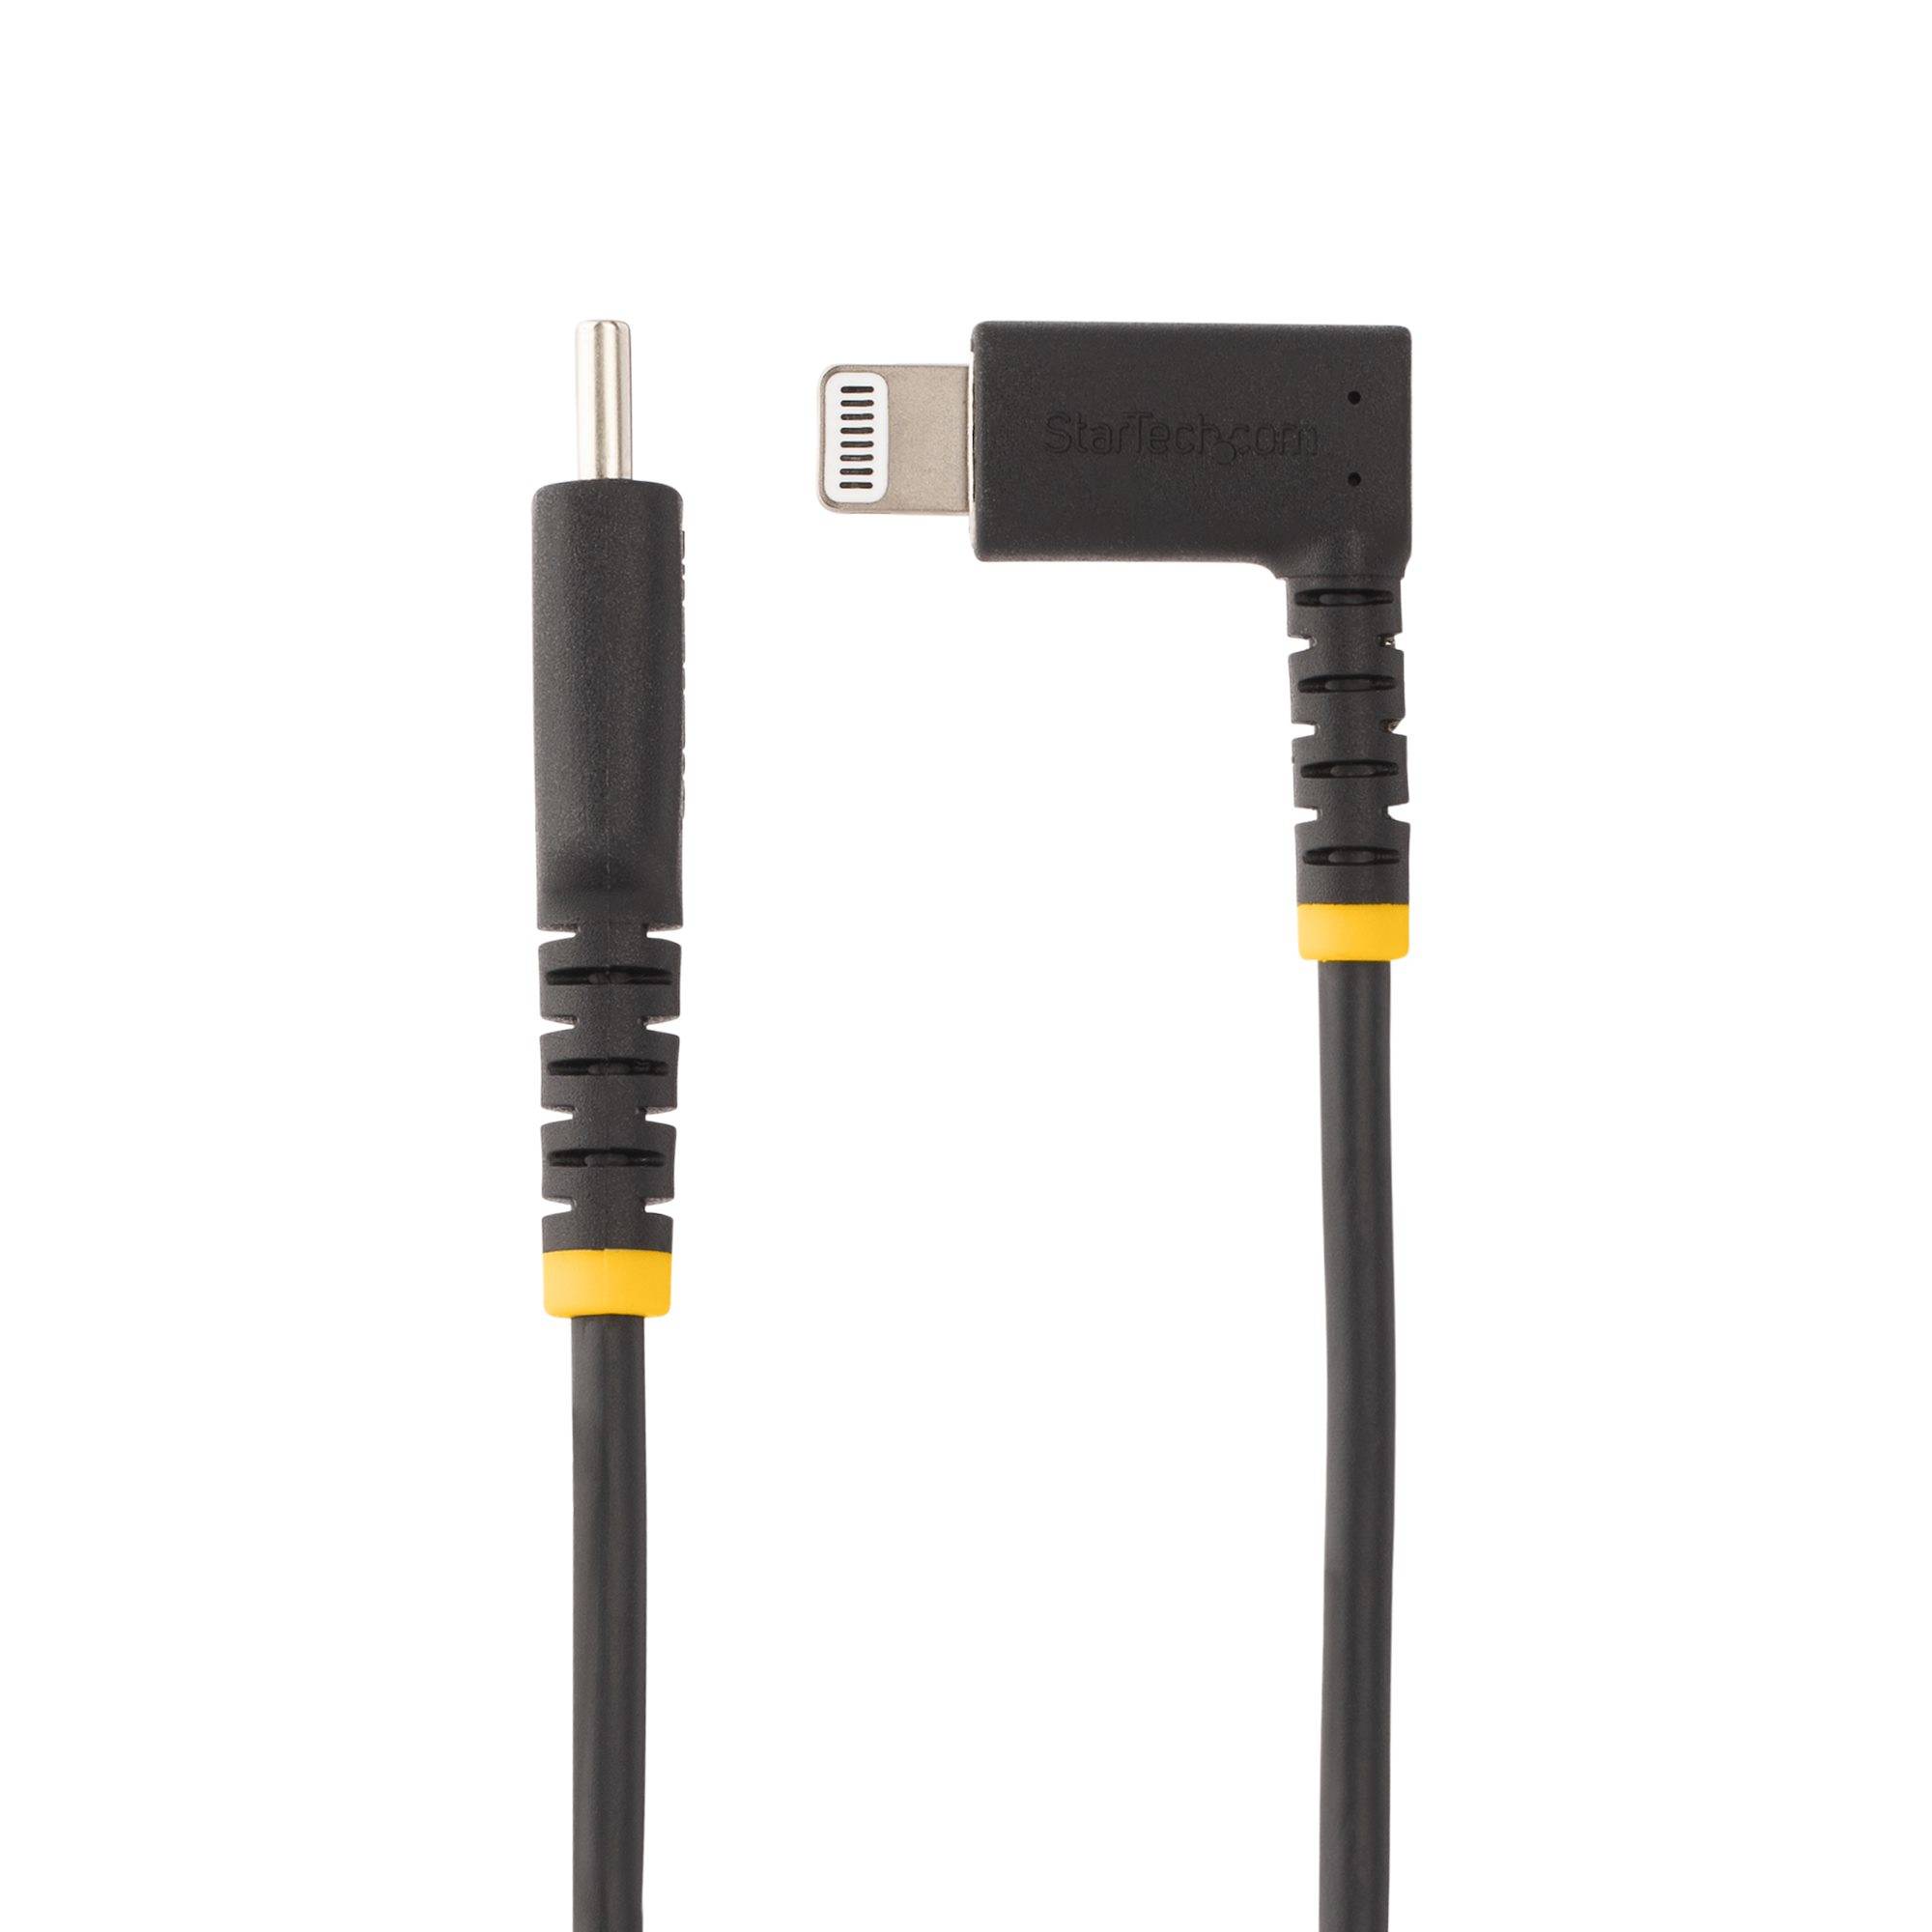 Rca Informatique - image du produit : 1M USB-C TO LIGHTNING CABLE - USB TYPE-C ANGLED LIGHTNING CORD